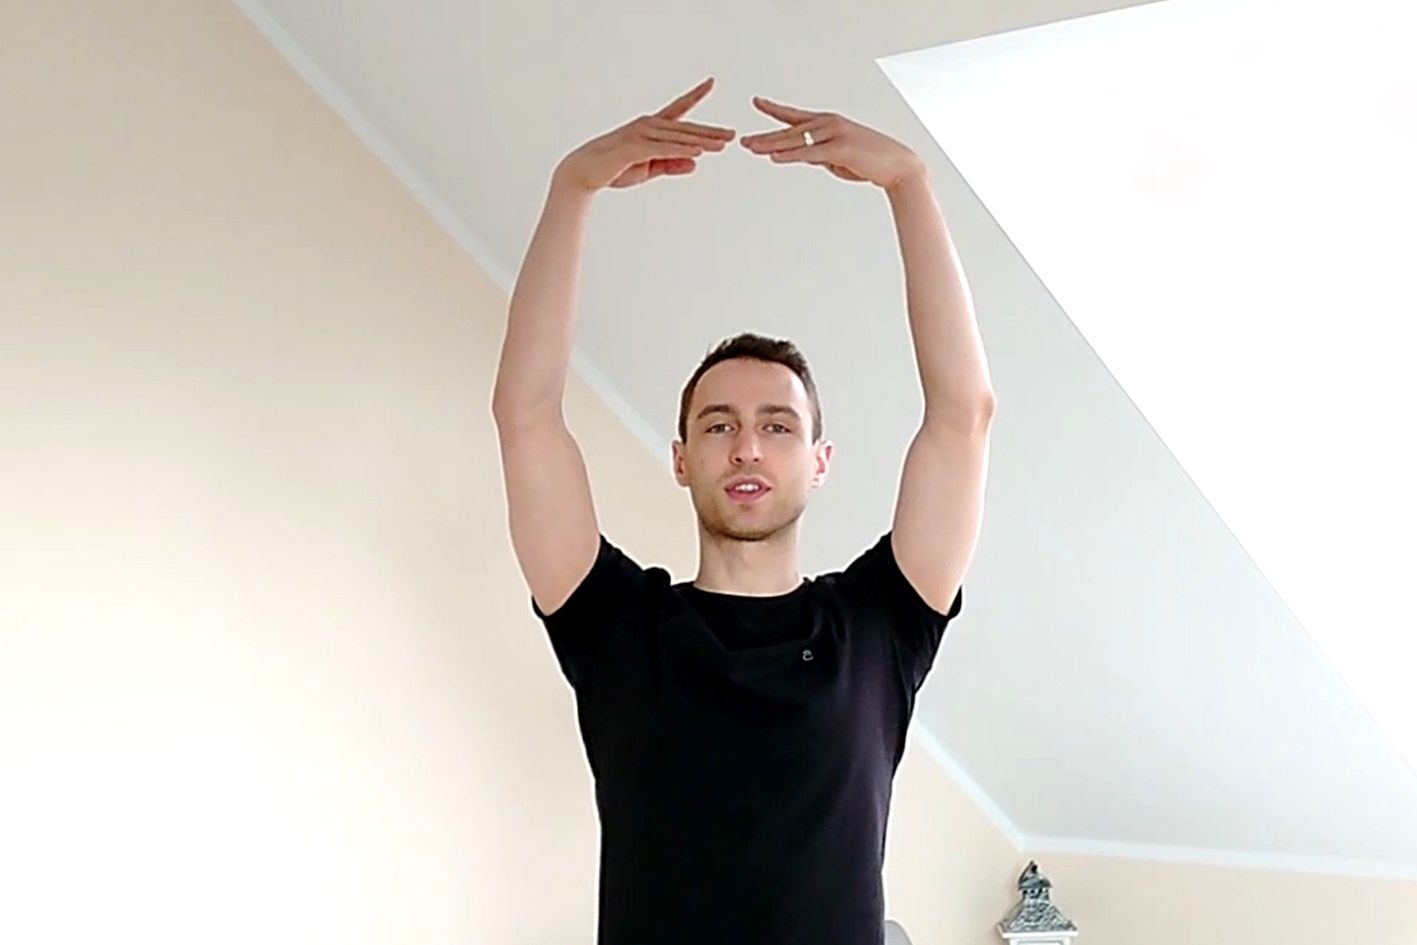 Andrzej Malinowski podczas treningu baletowego- pierwsza pozycja rąk